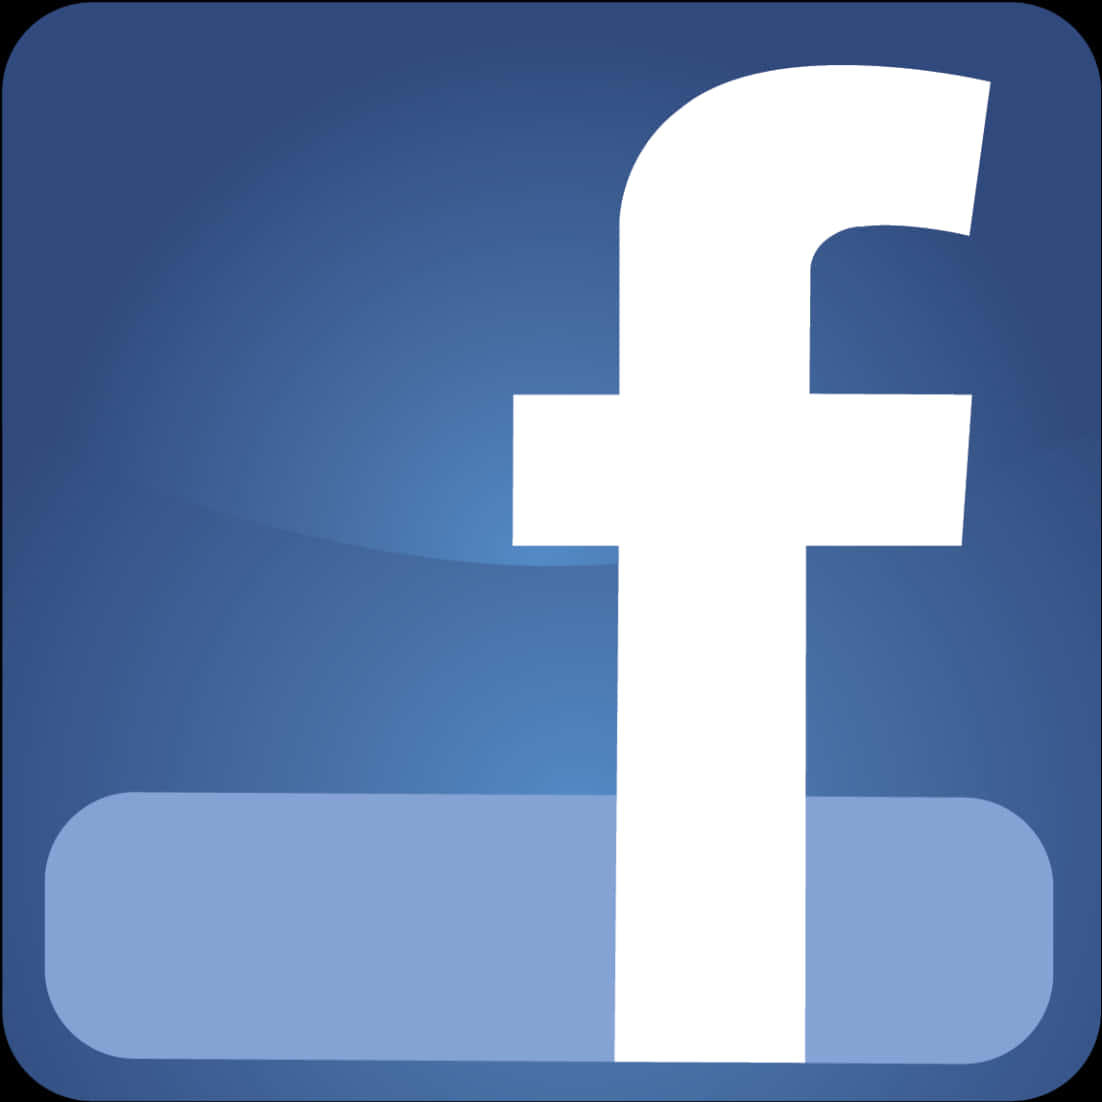 Facebook Logo Large